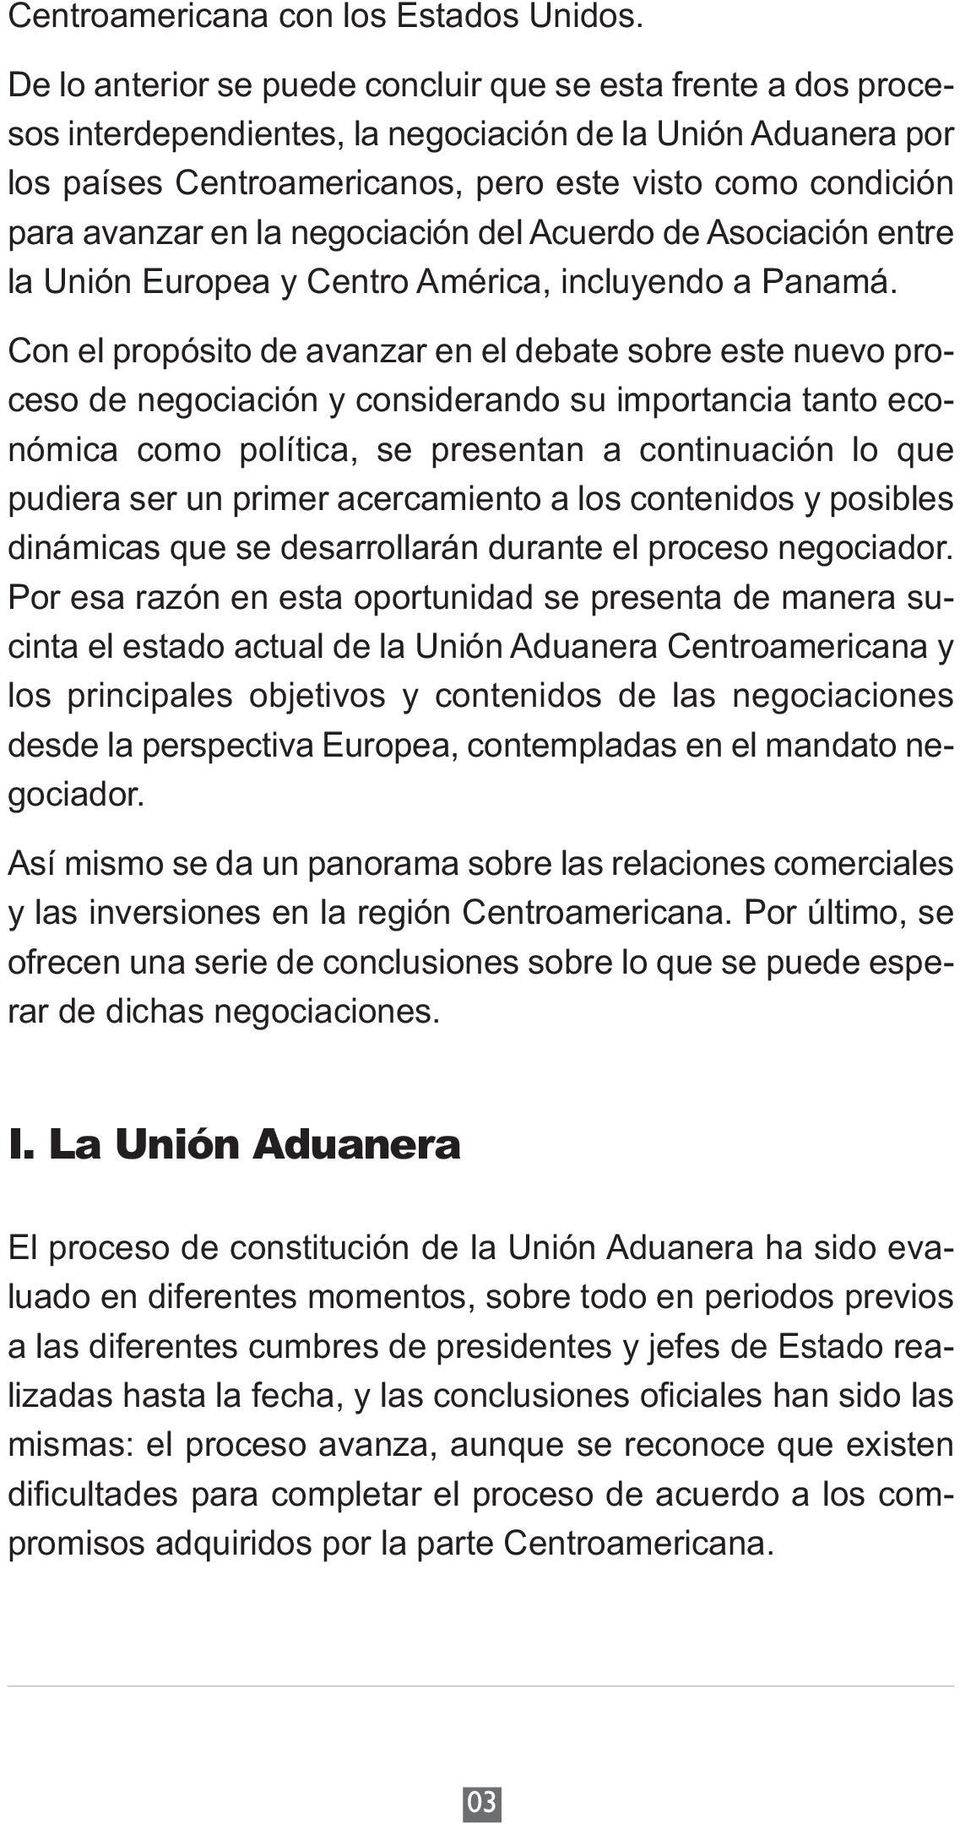 en la negociación del Acuerdo de Asociación entre la Unión Europea y Centro América, incluyendo a Panamá.